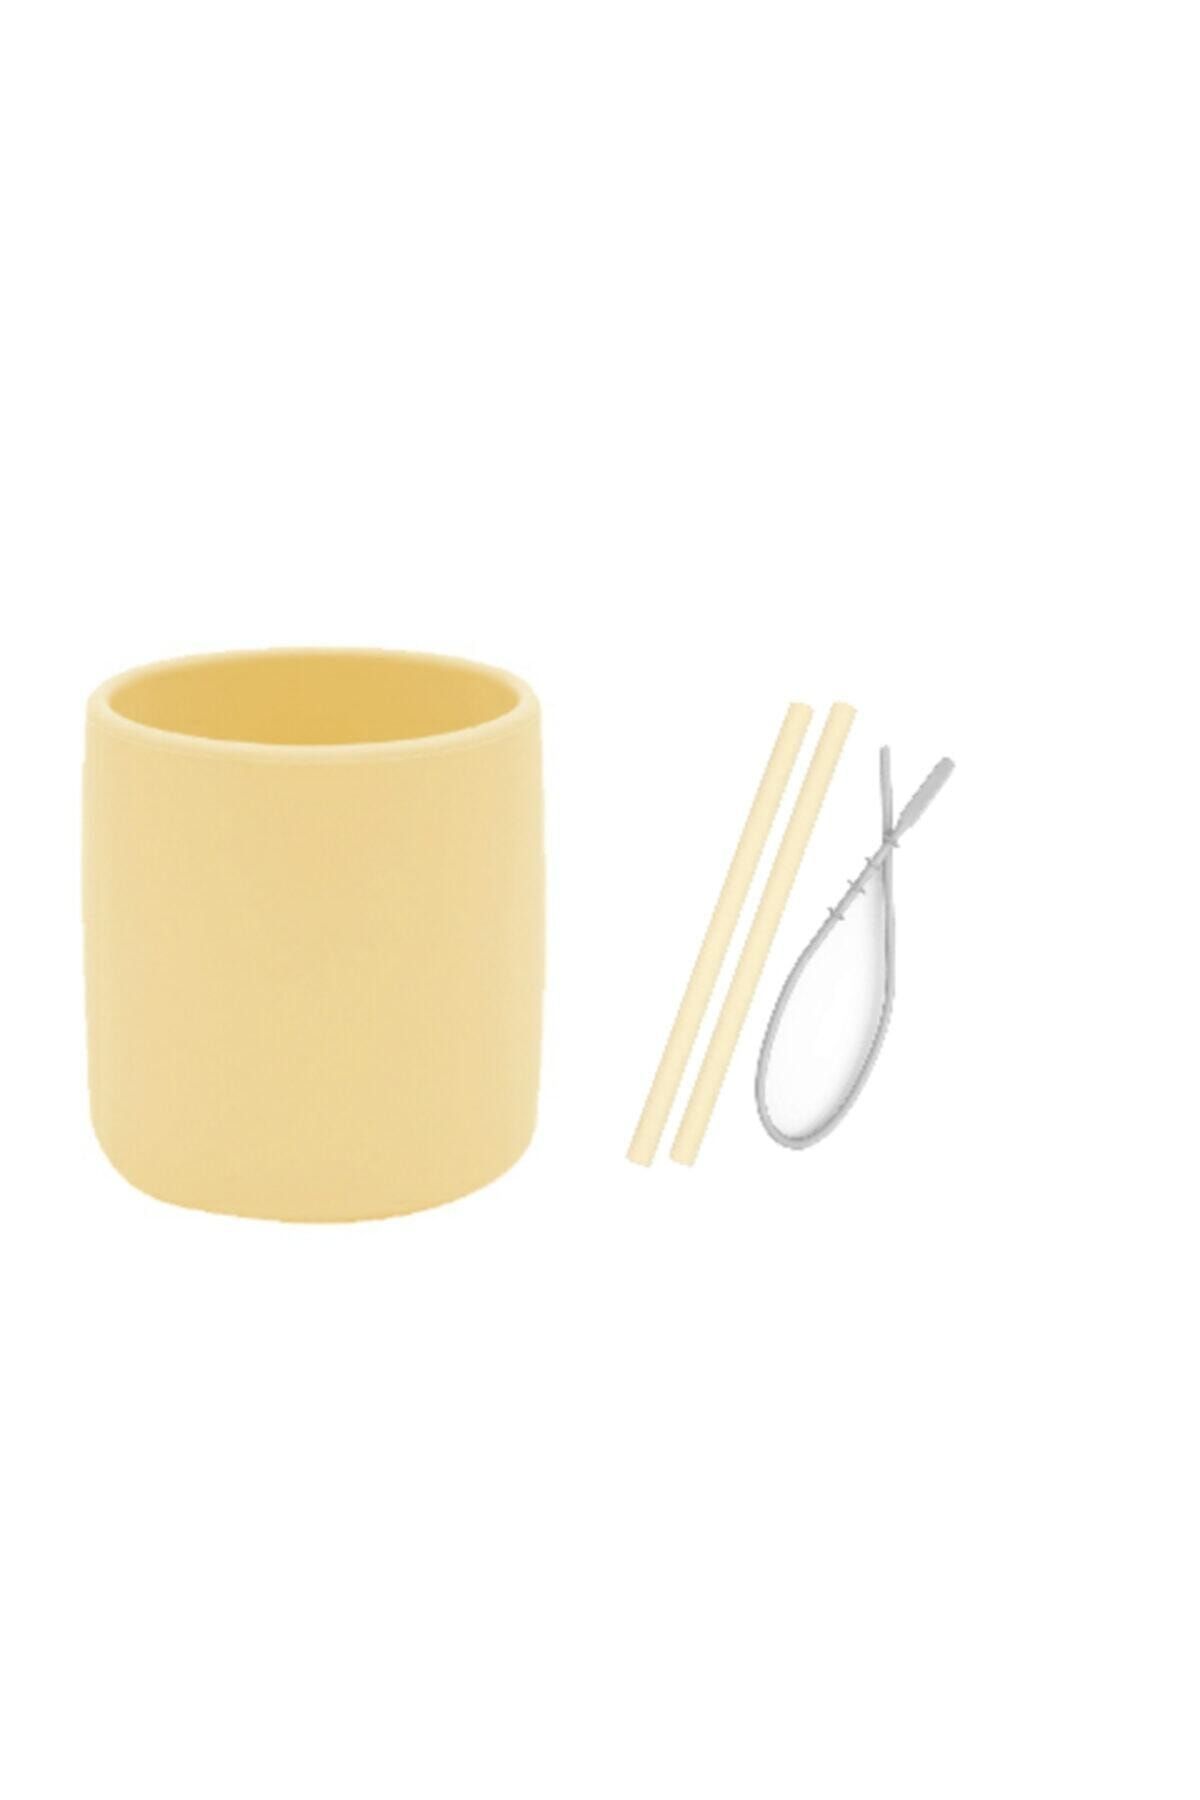 Oioi 3 Li Set Sarı (Silikon Bardak + 2 Li Silikon Pipet + Temizleyici Fırçası )